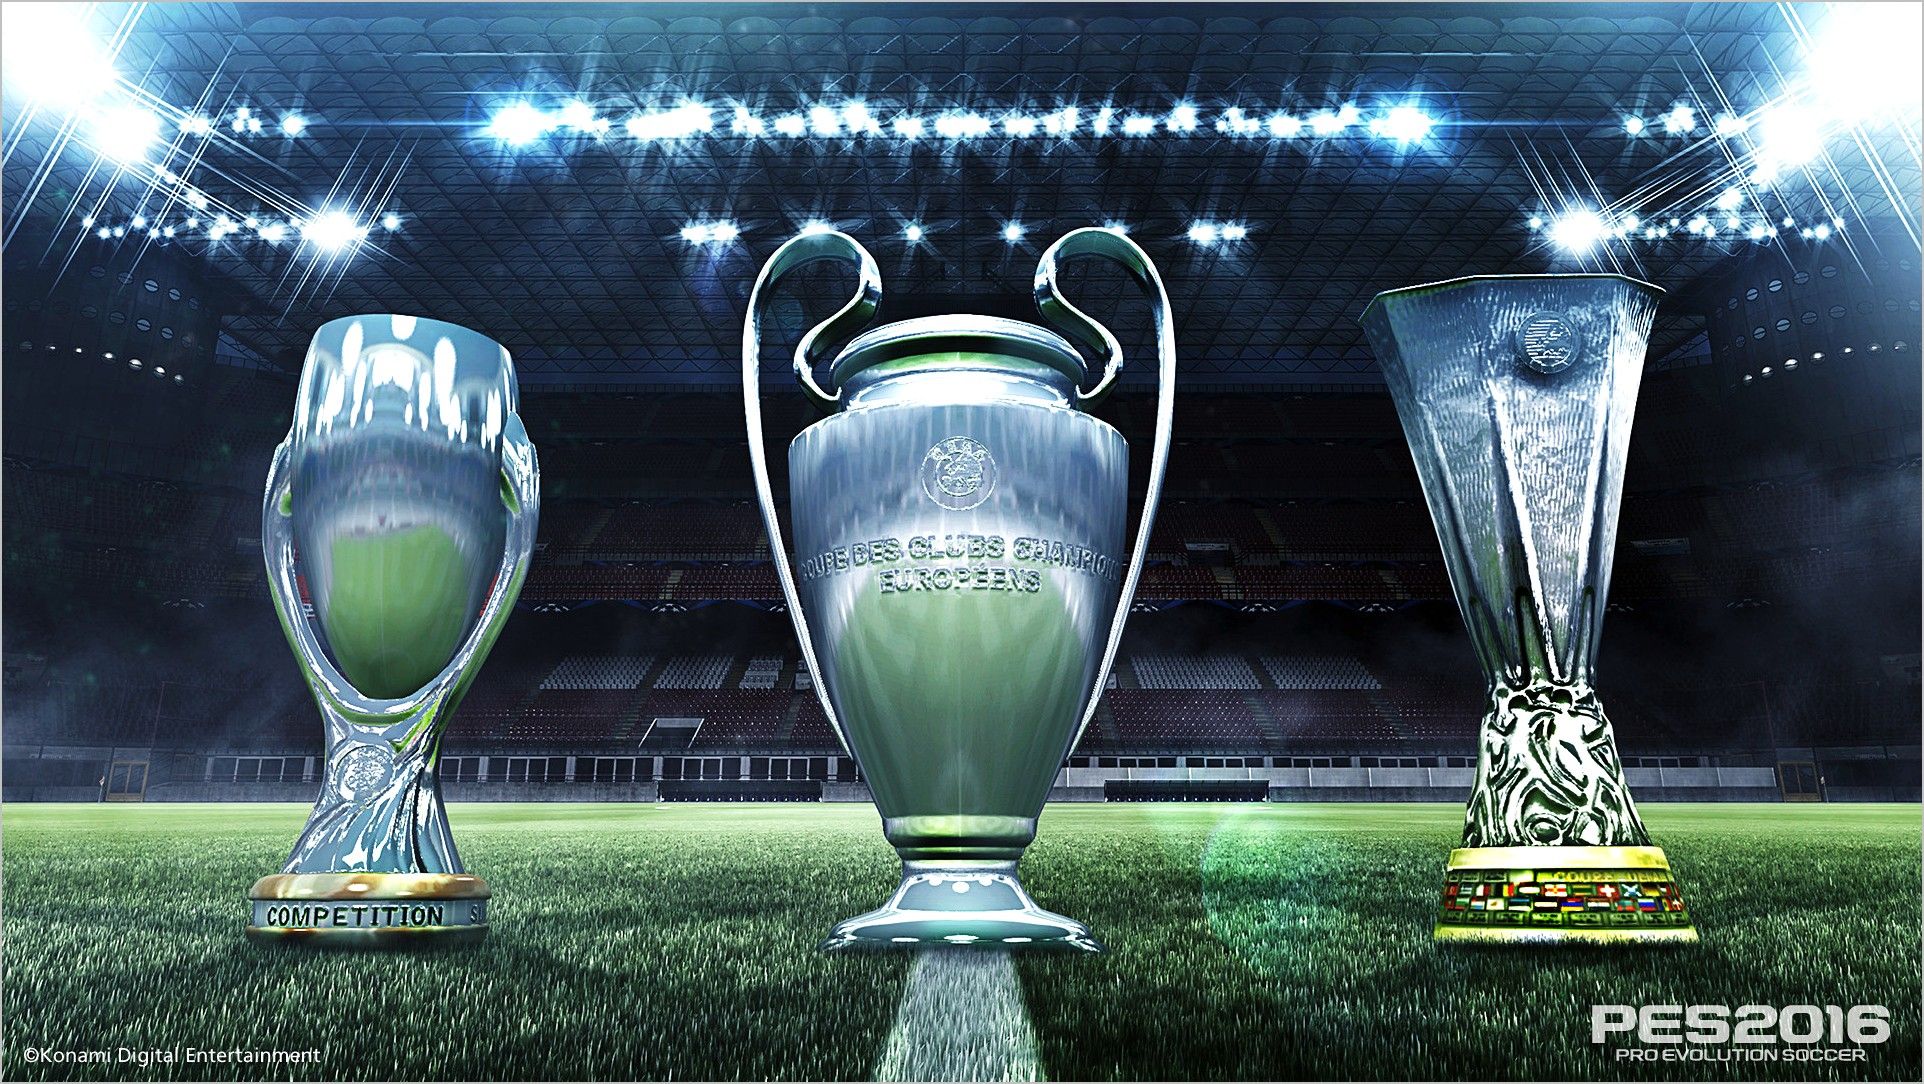 Champions League Trophy Wallpaper